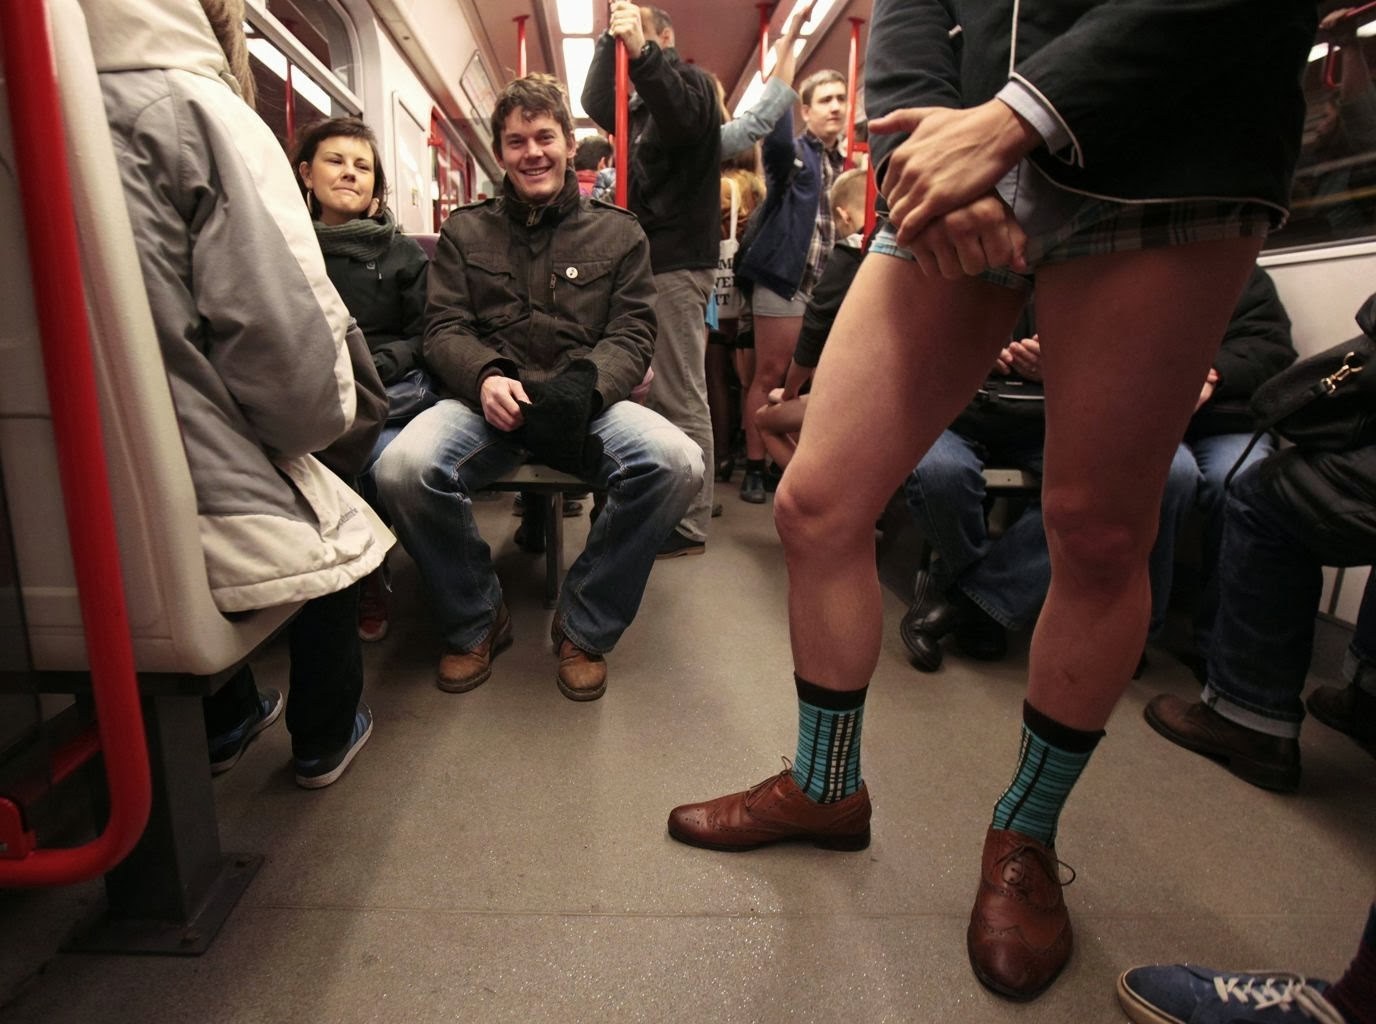 встречи геев в метро фото 89